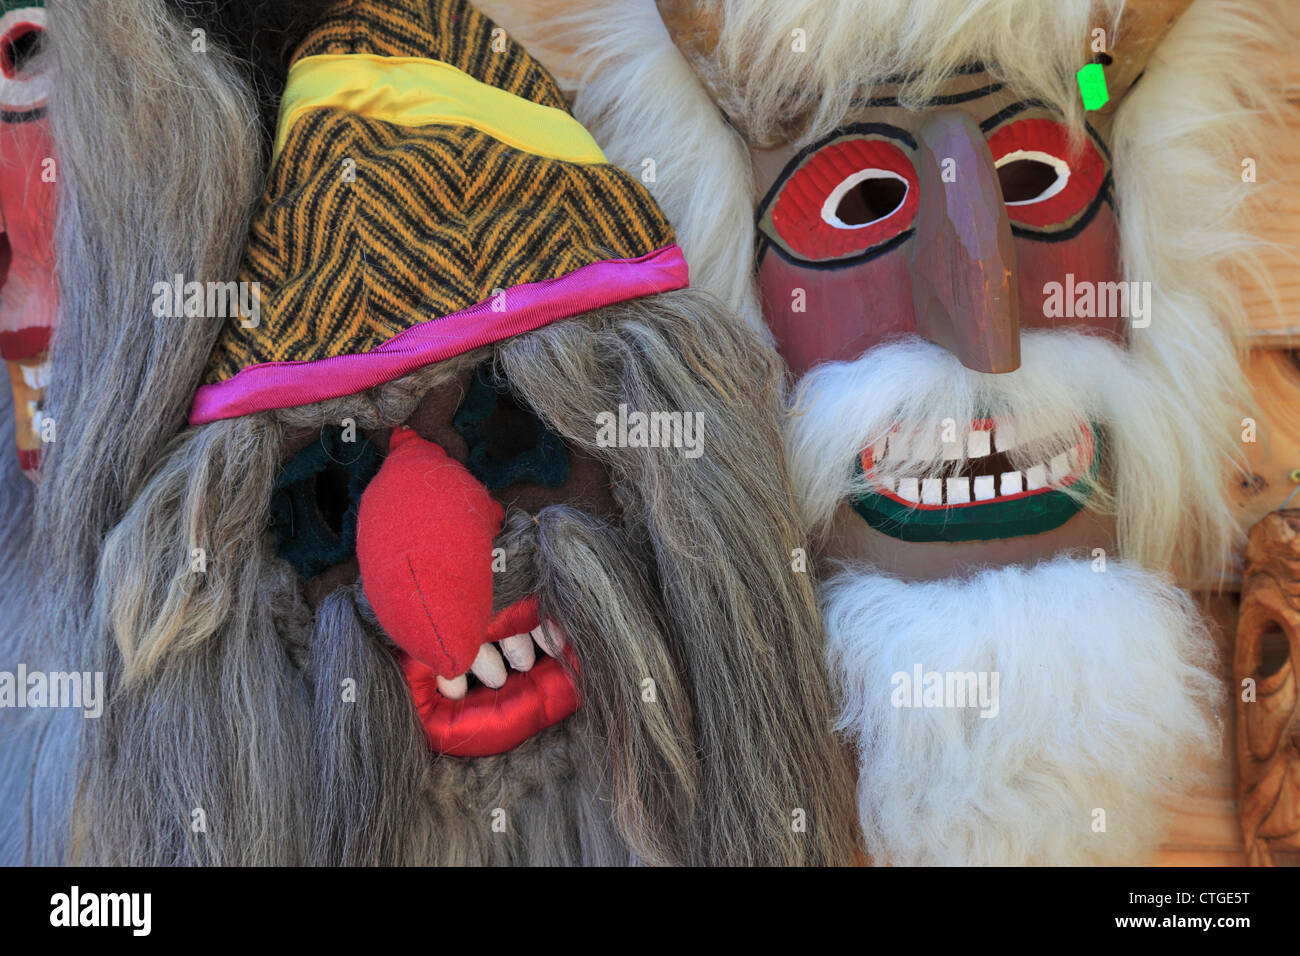 Colorati rituali tradizionali maschere in un negozio di articoli da regalo nella crusca, Transilvania, Romania Foto Stock